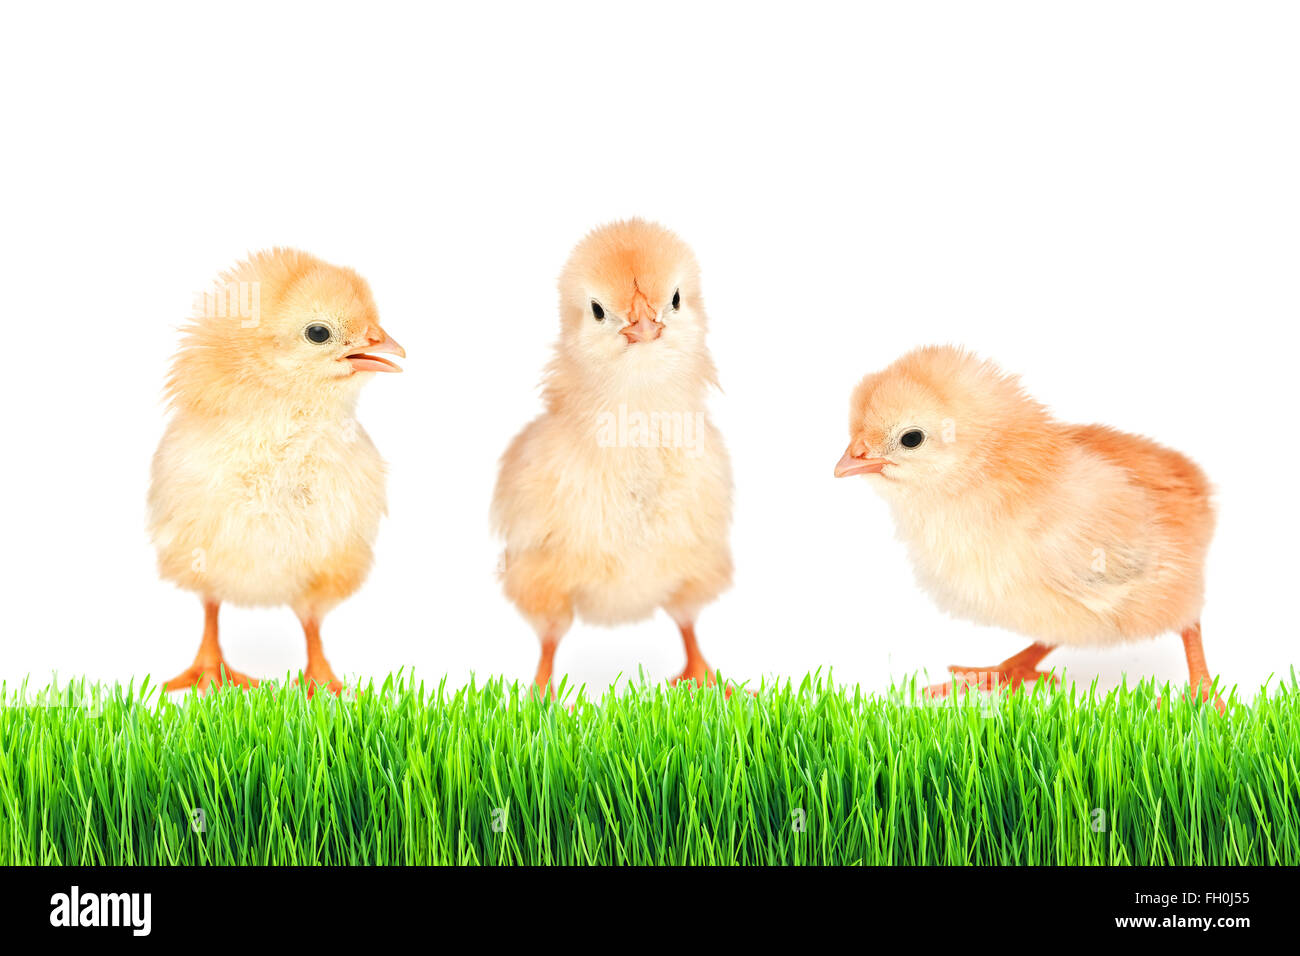 kleines Huhn auf dem grünen Rasen, isoliert Stockfoto